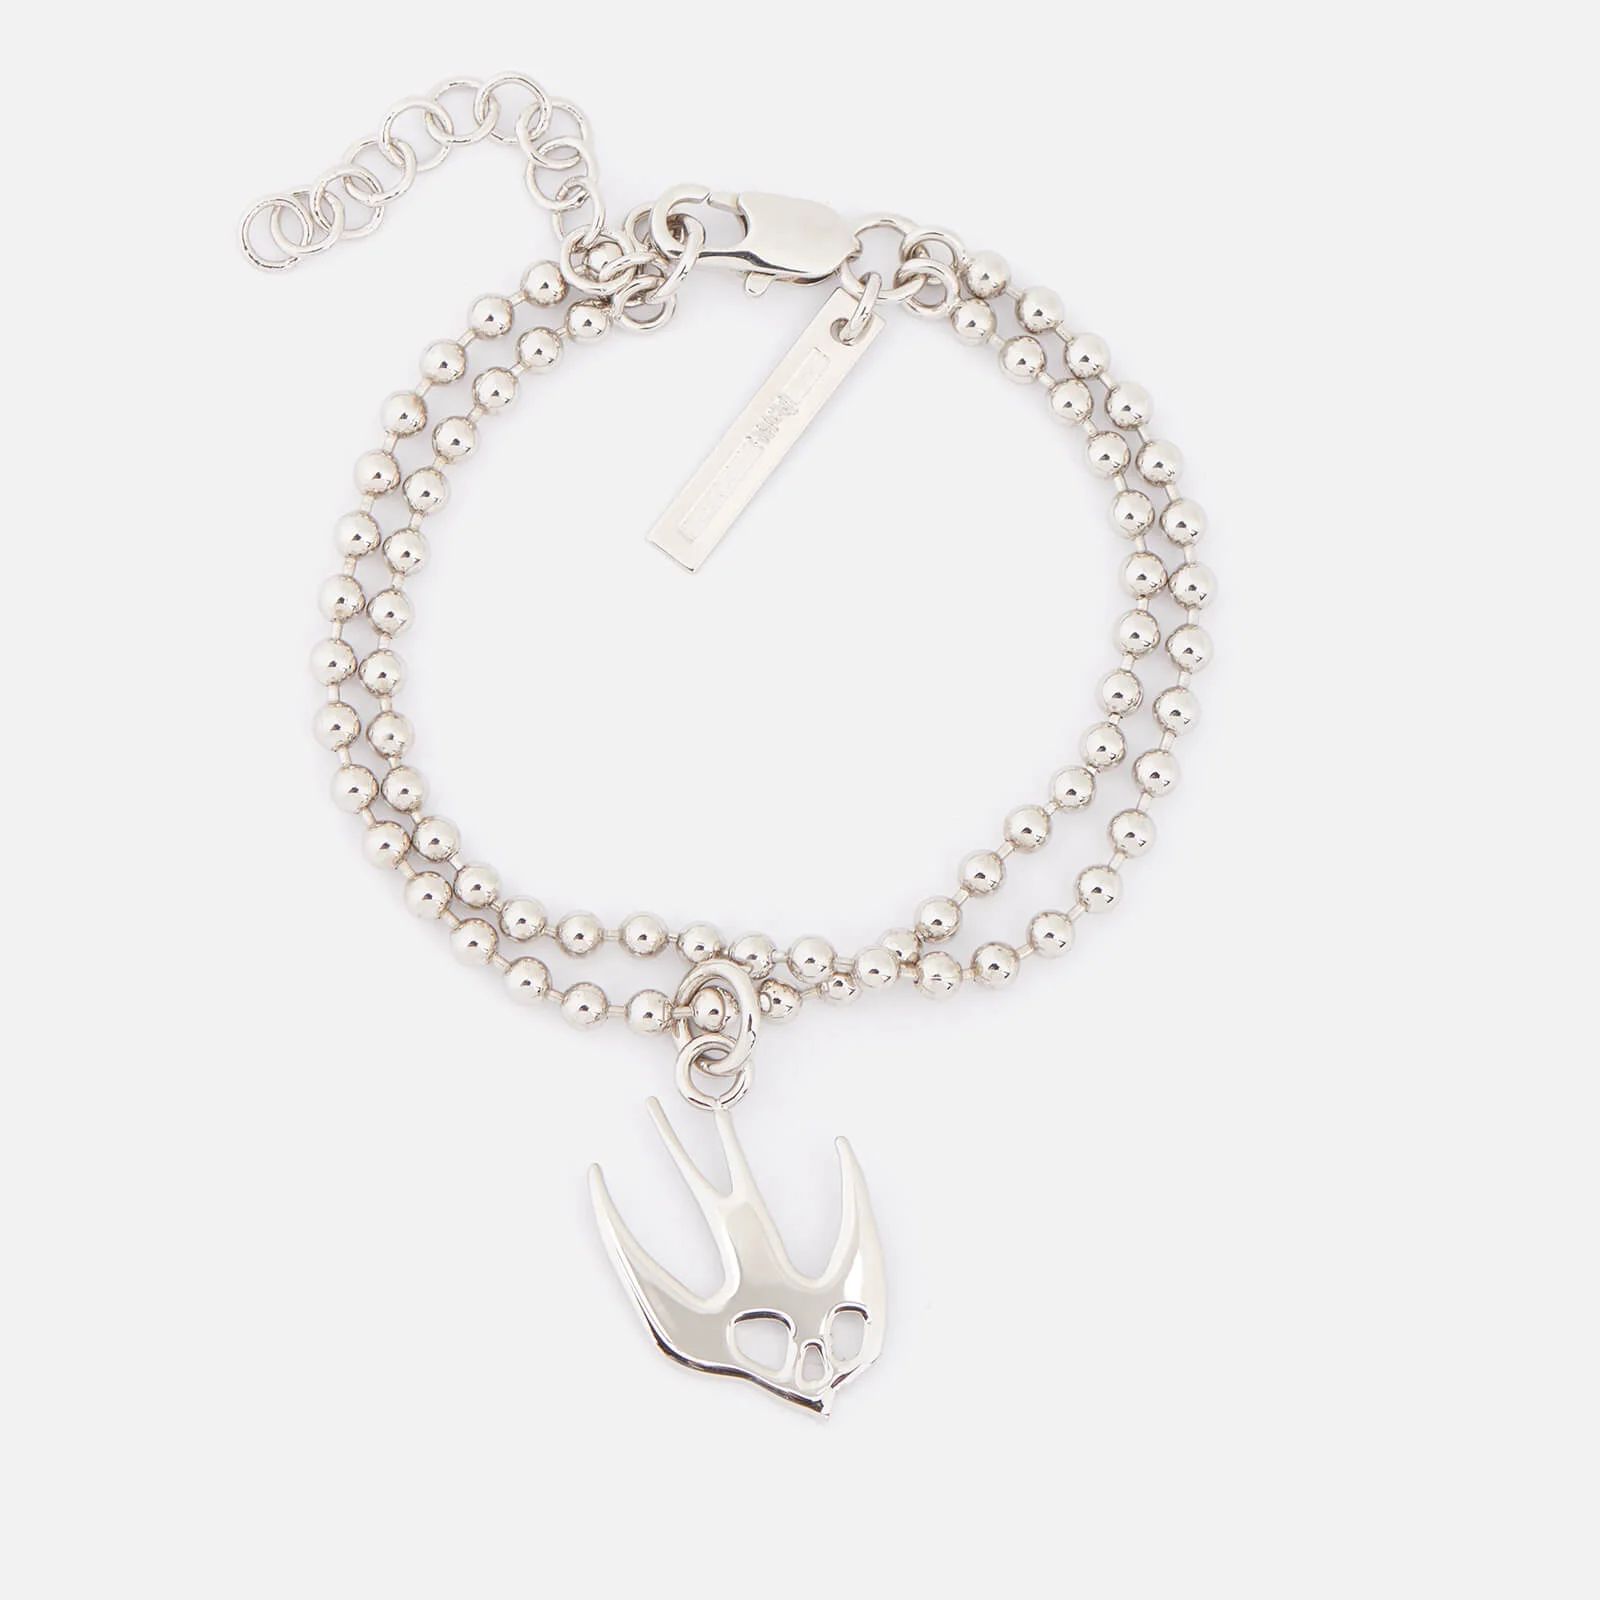 McQ Alexander McQueen Women's Swallow Bracelet - Shiny Nickel Image 1